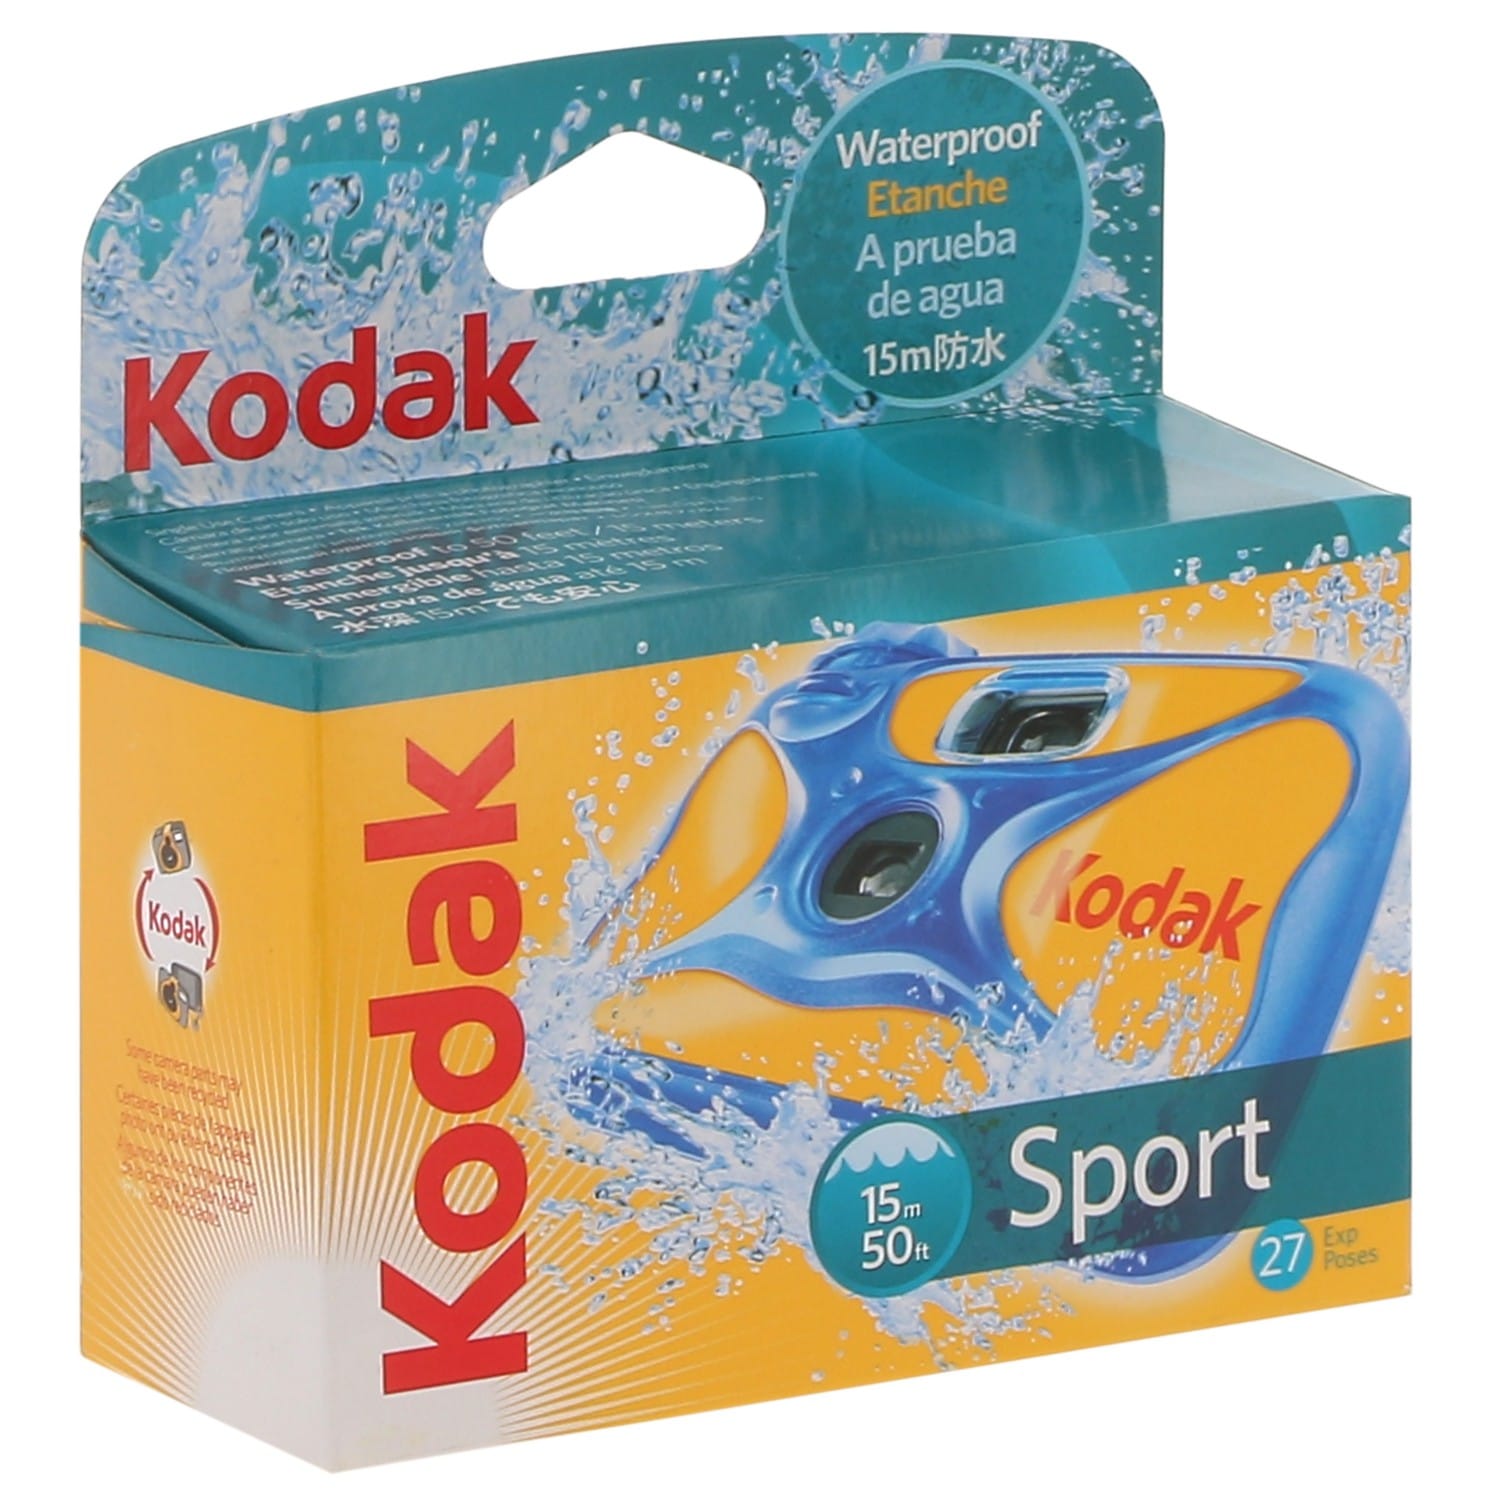 Kodak Waterproof Appareil photo jetable 27 pose Expiré en 2001 (Réf#P-609)